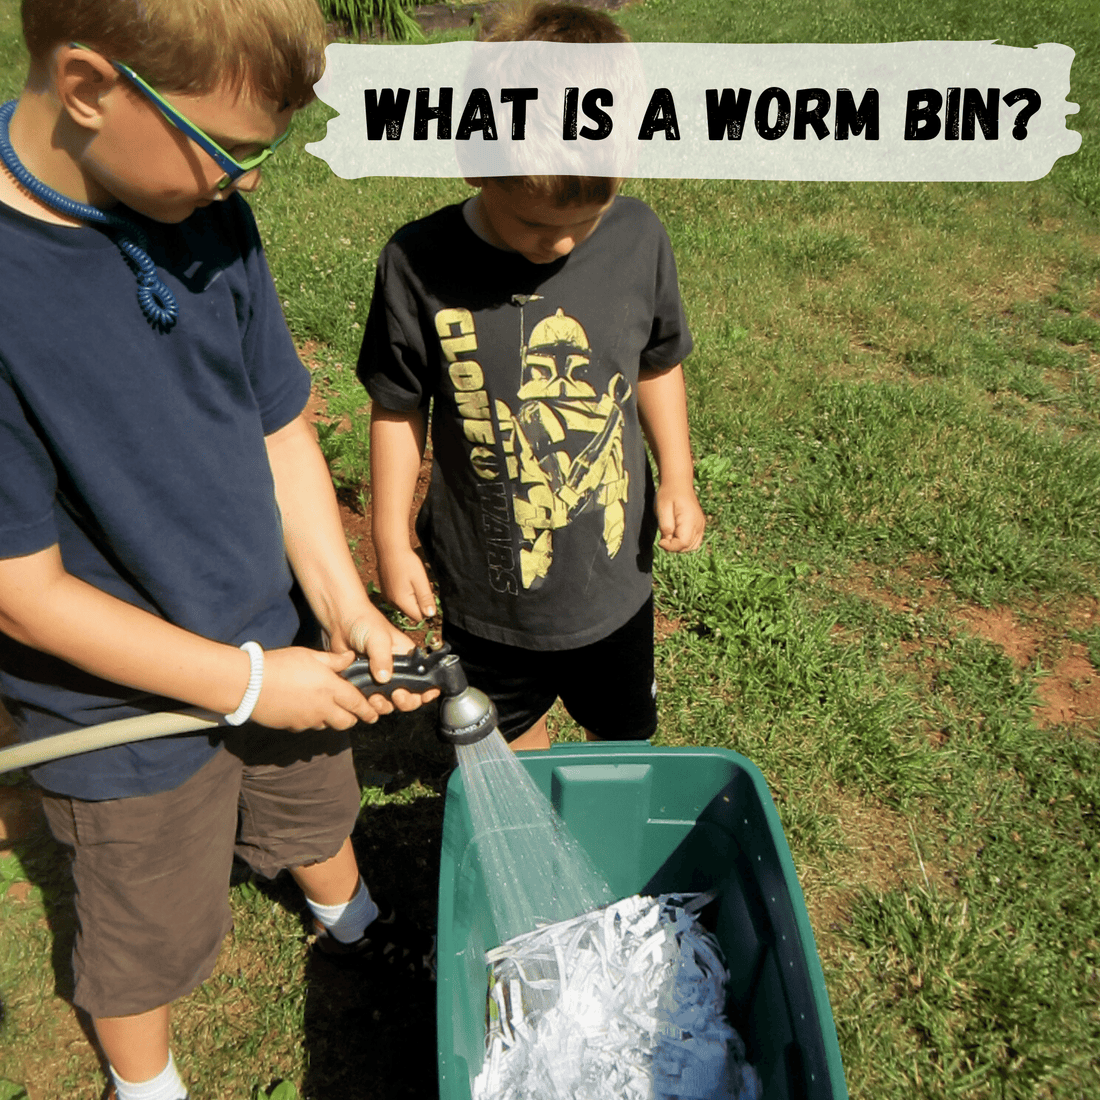 What is a worm bin?